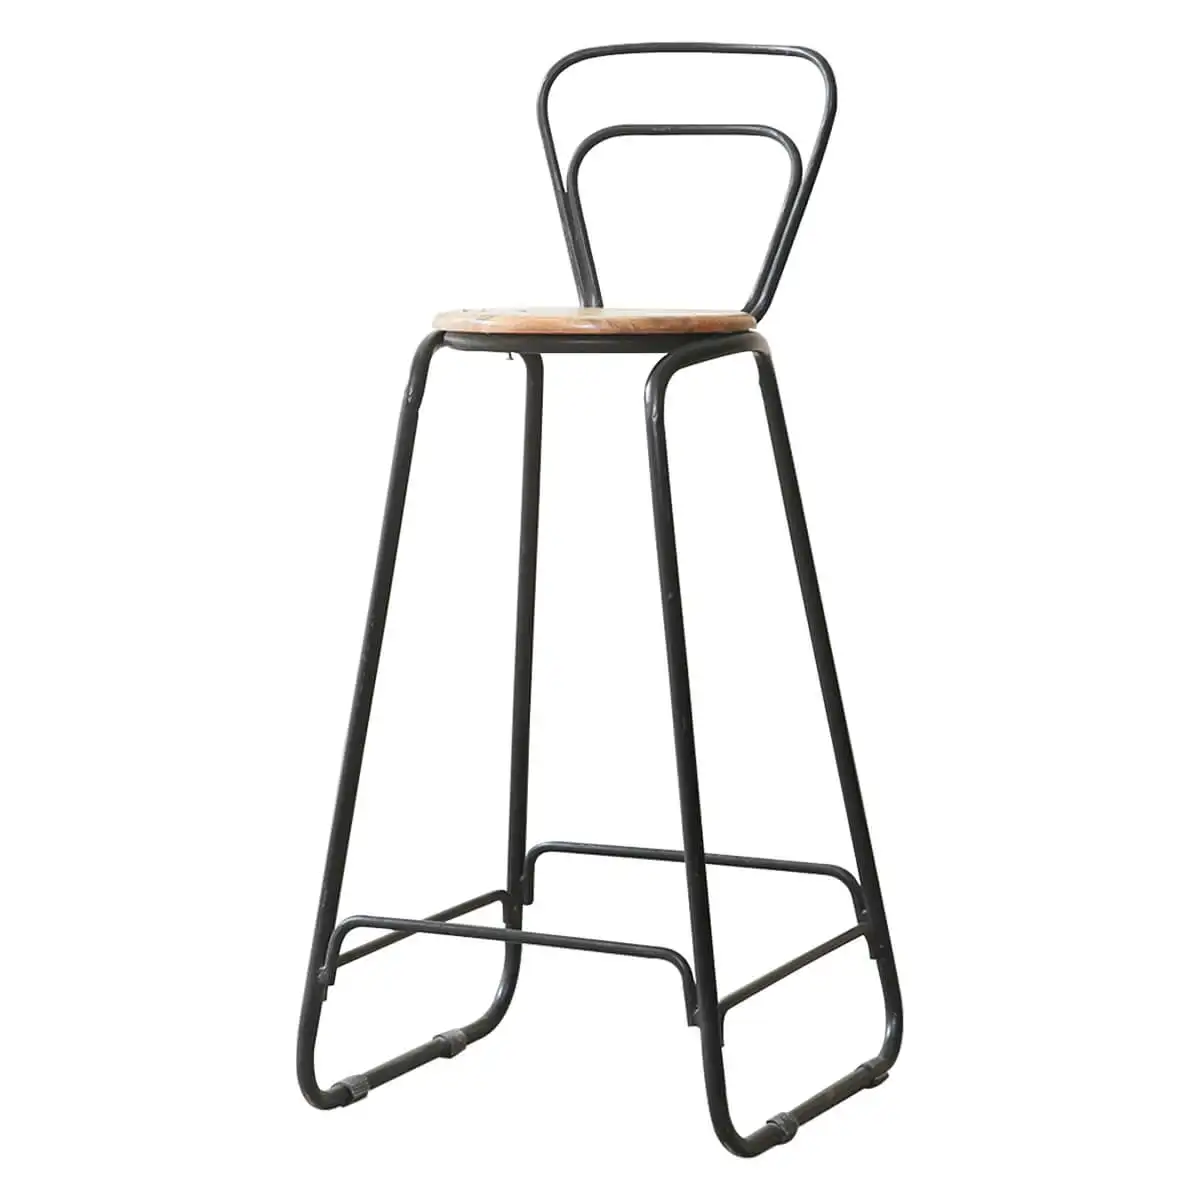 Tabouret de bar moderne Simple avec bois massif et métal artisanal, chaises de salon, tables de bar, chaises d'hôtel